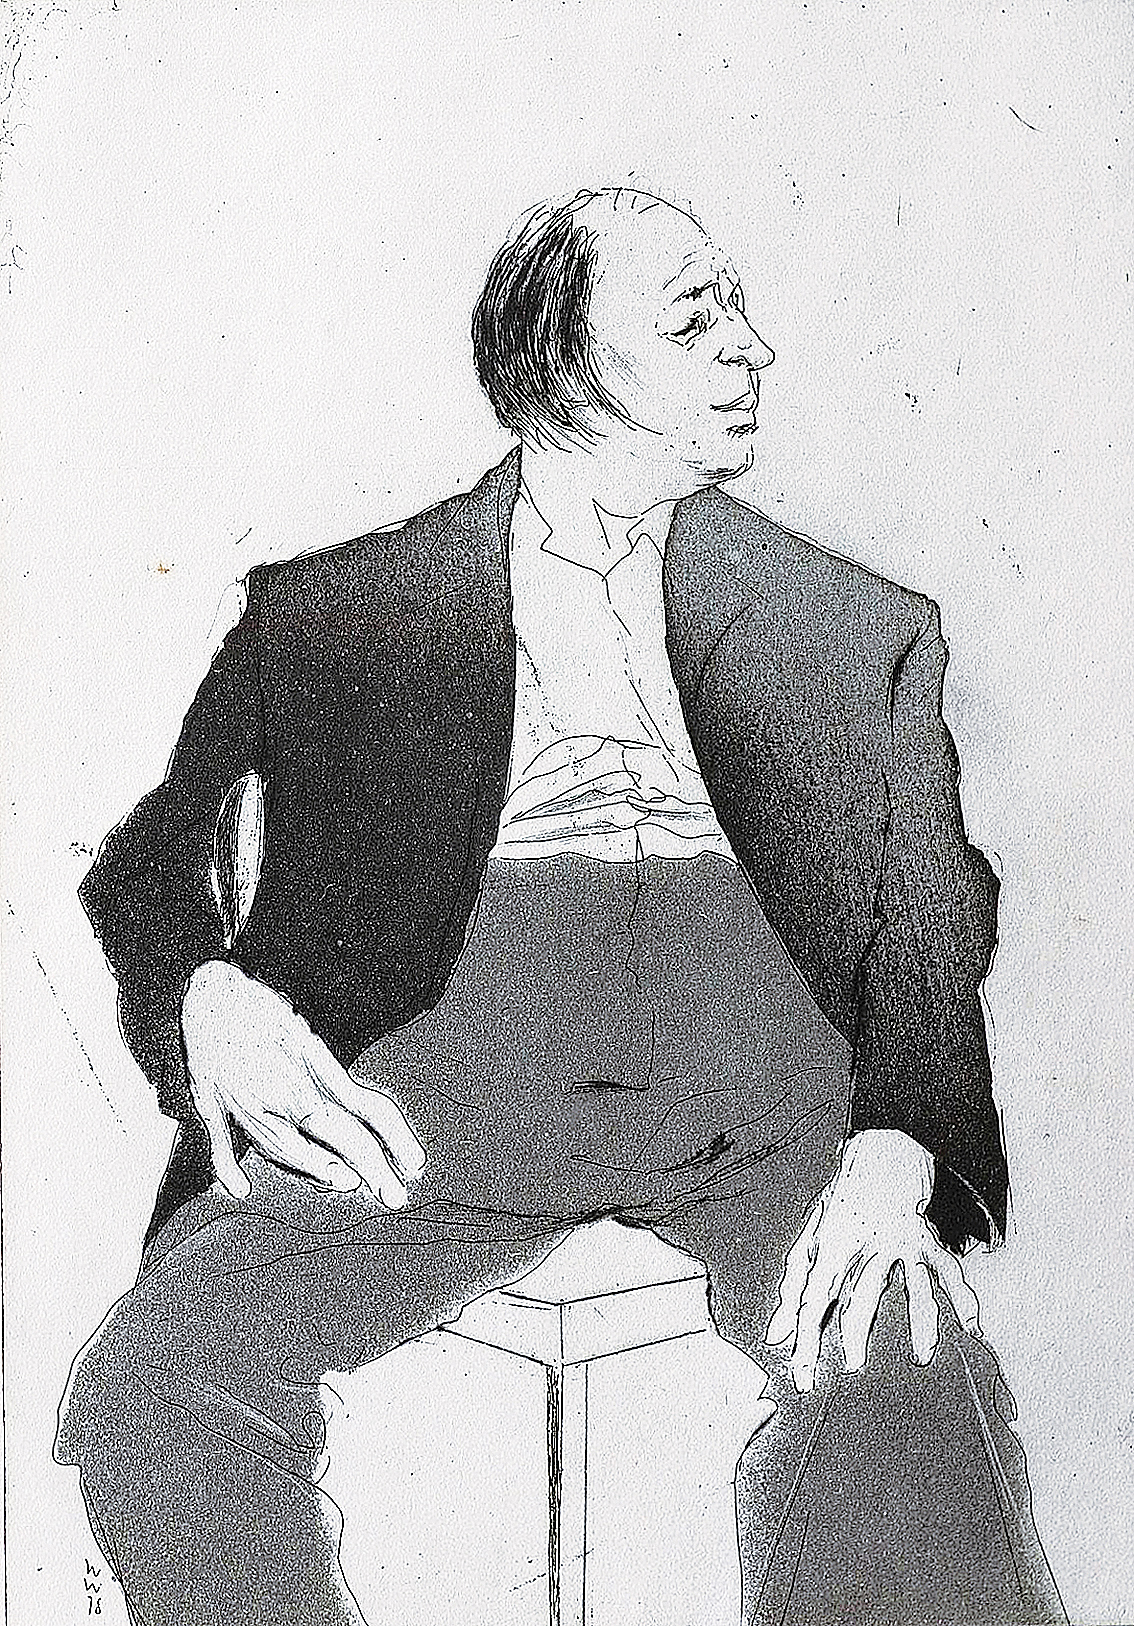 Portrait of the artist 'Wilhelm M. Busch'